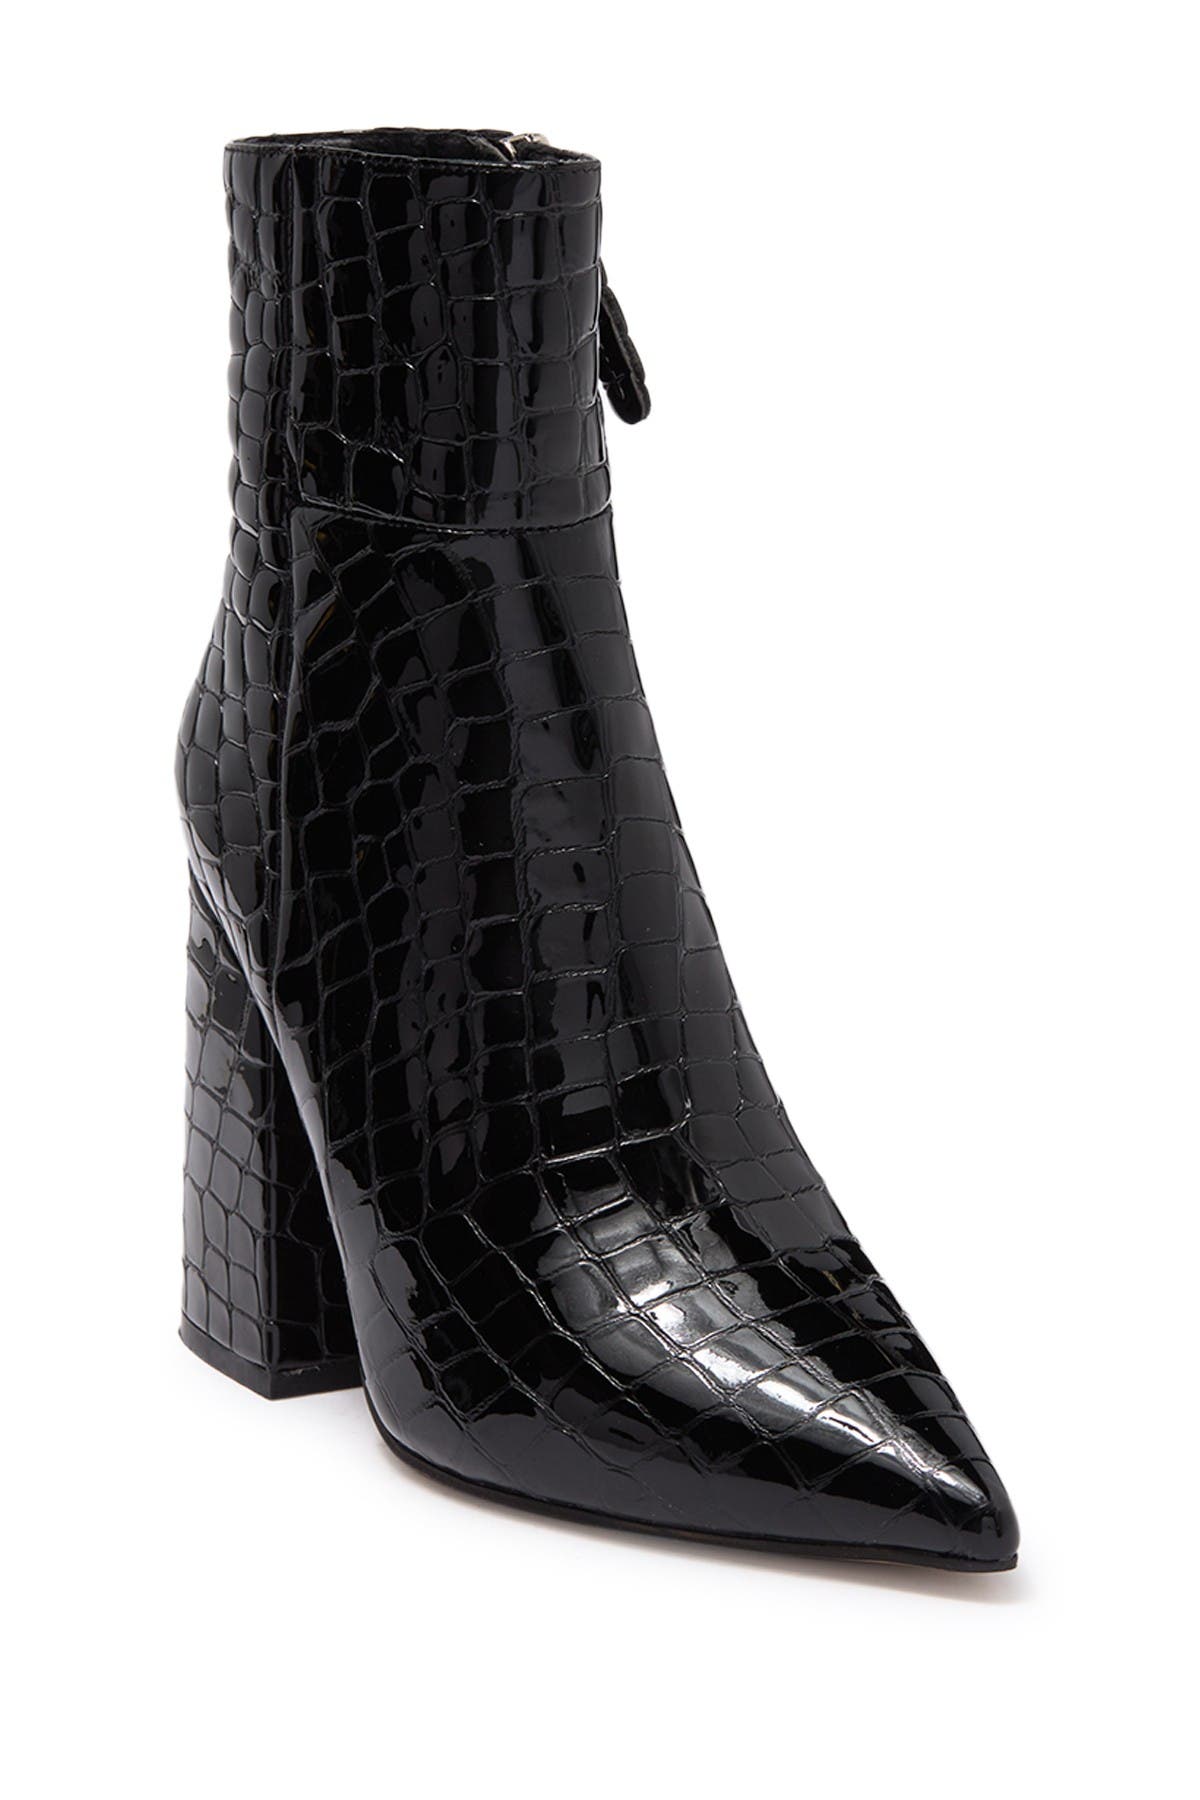 Alias Mae Ahara Pointed Toe Bootie In Black Croc Patent